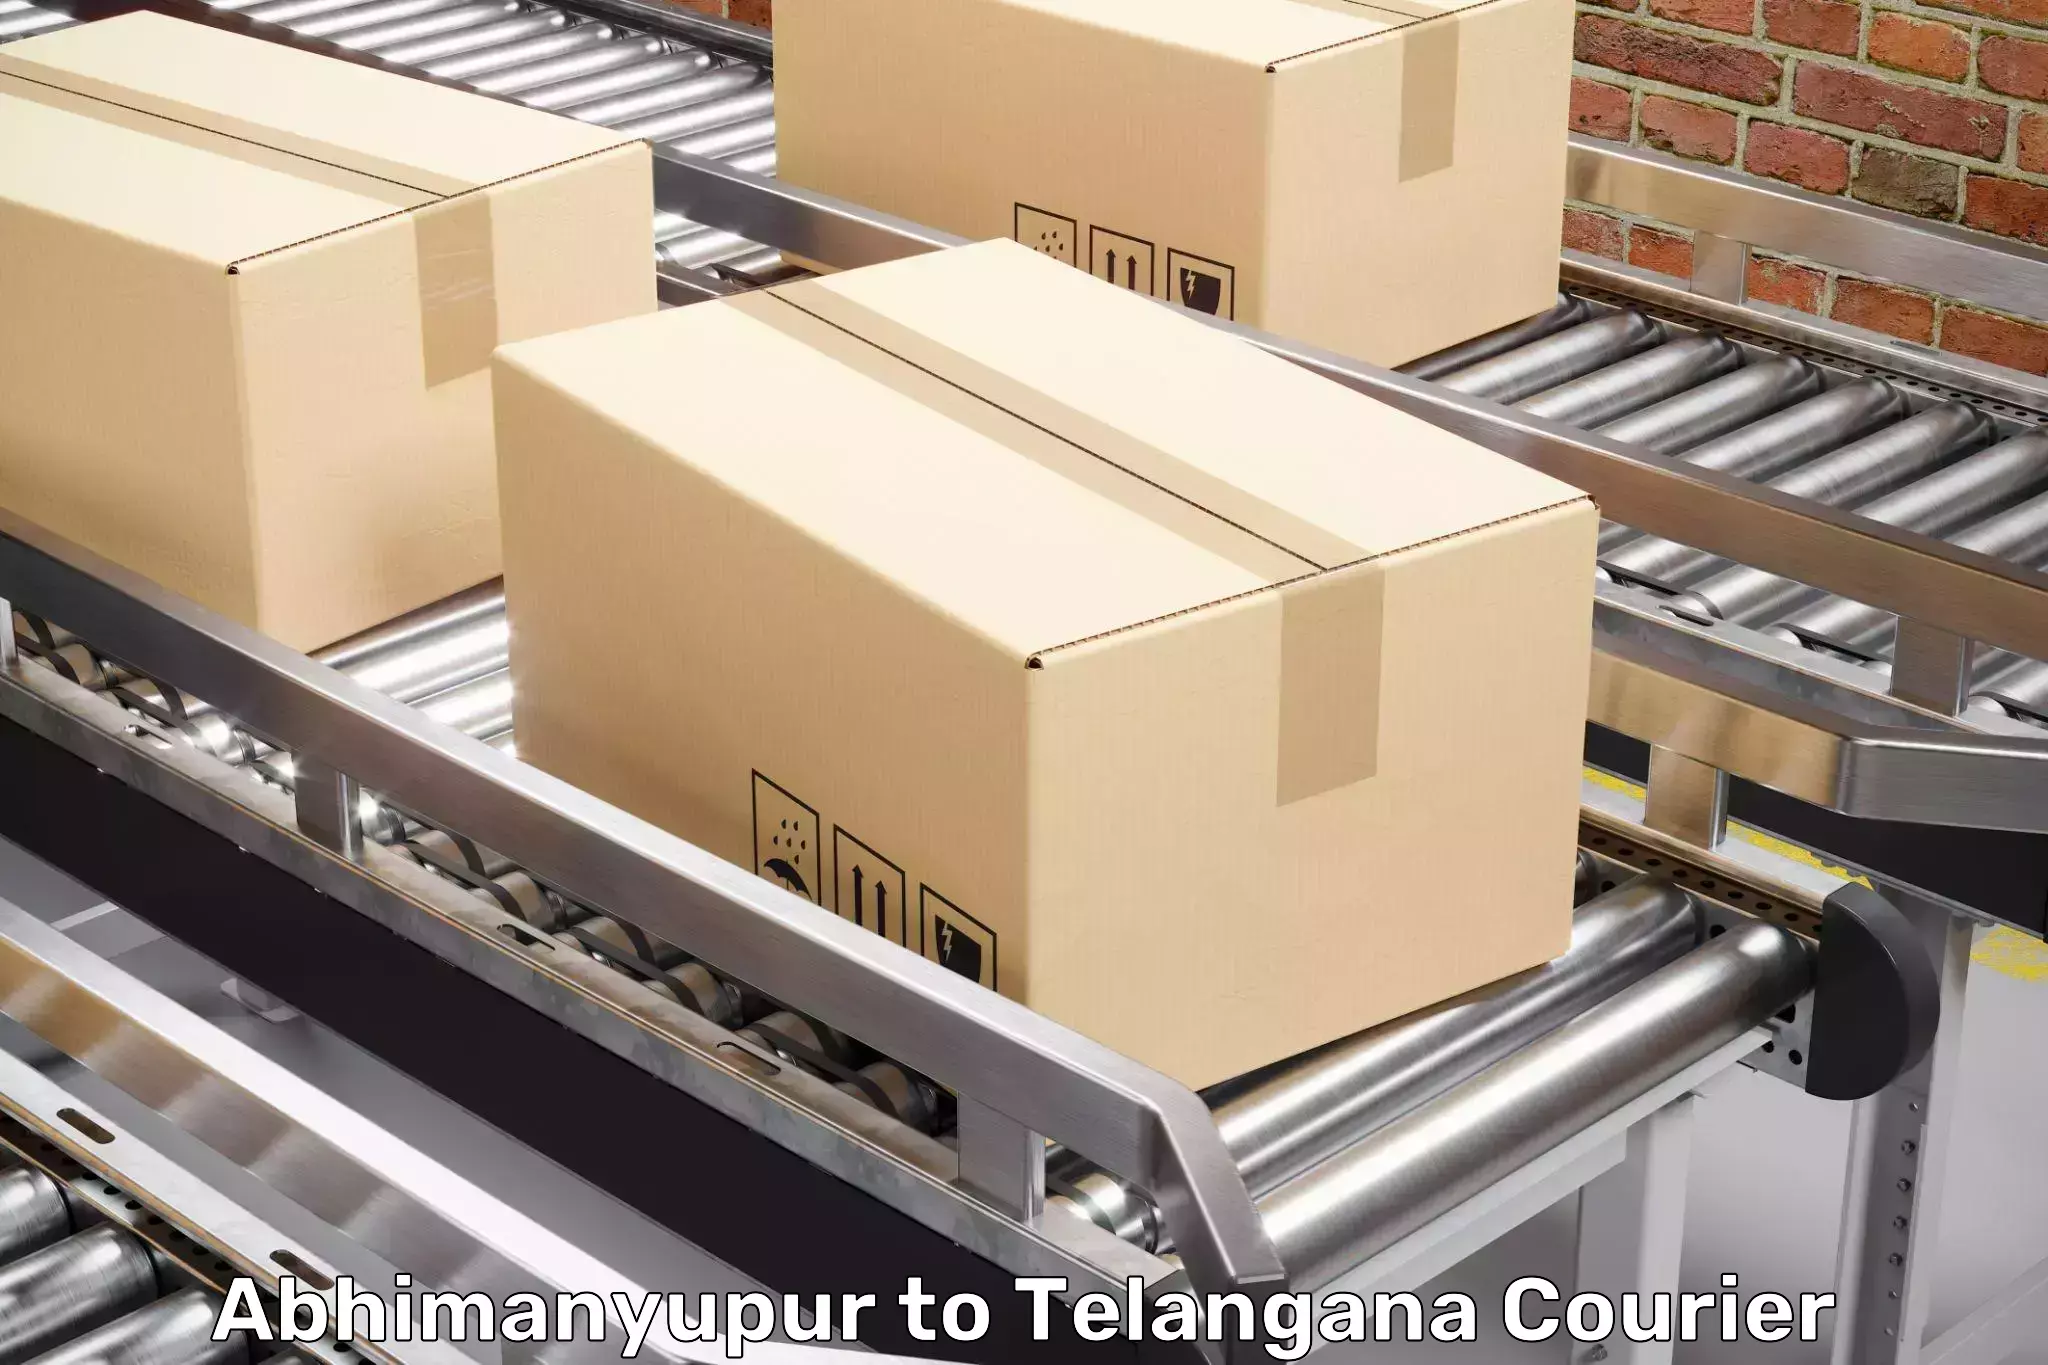 Skilled furniture transporters Abhimanyupur to Mudigonda